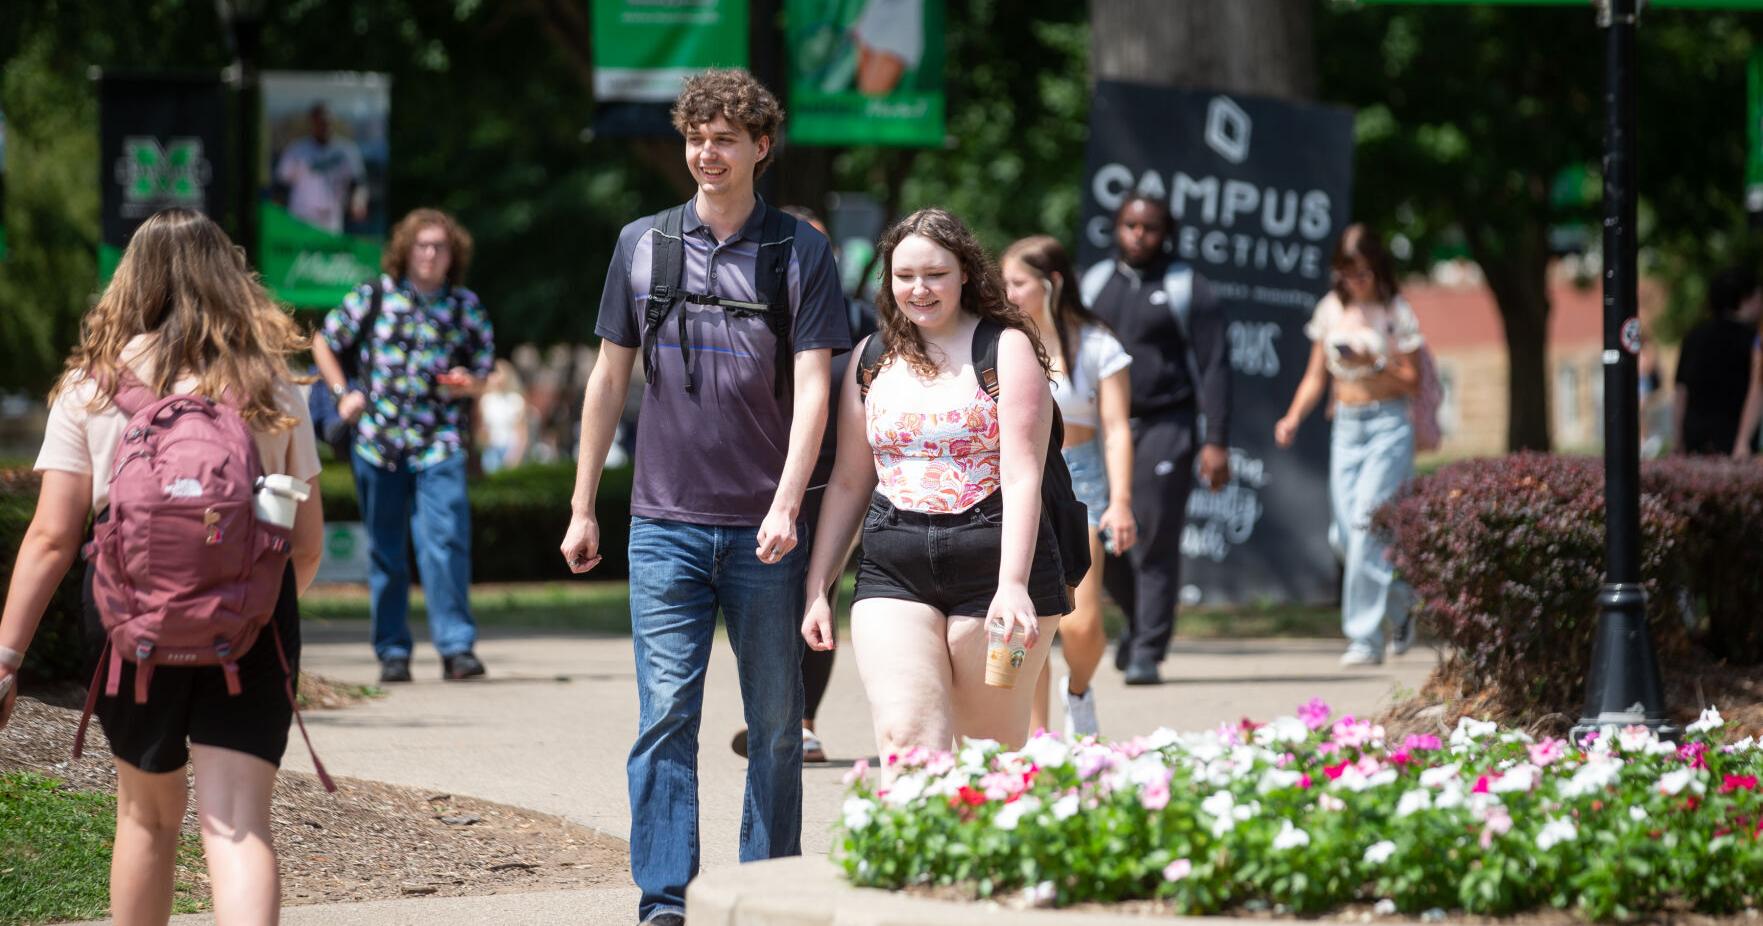 Marshall University to offer bachelor’s degree in filmmaking | News